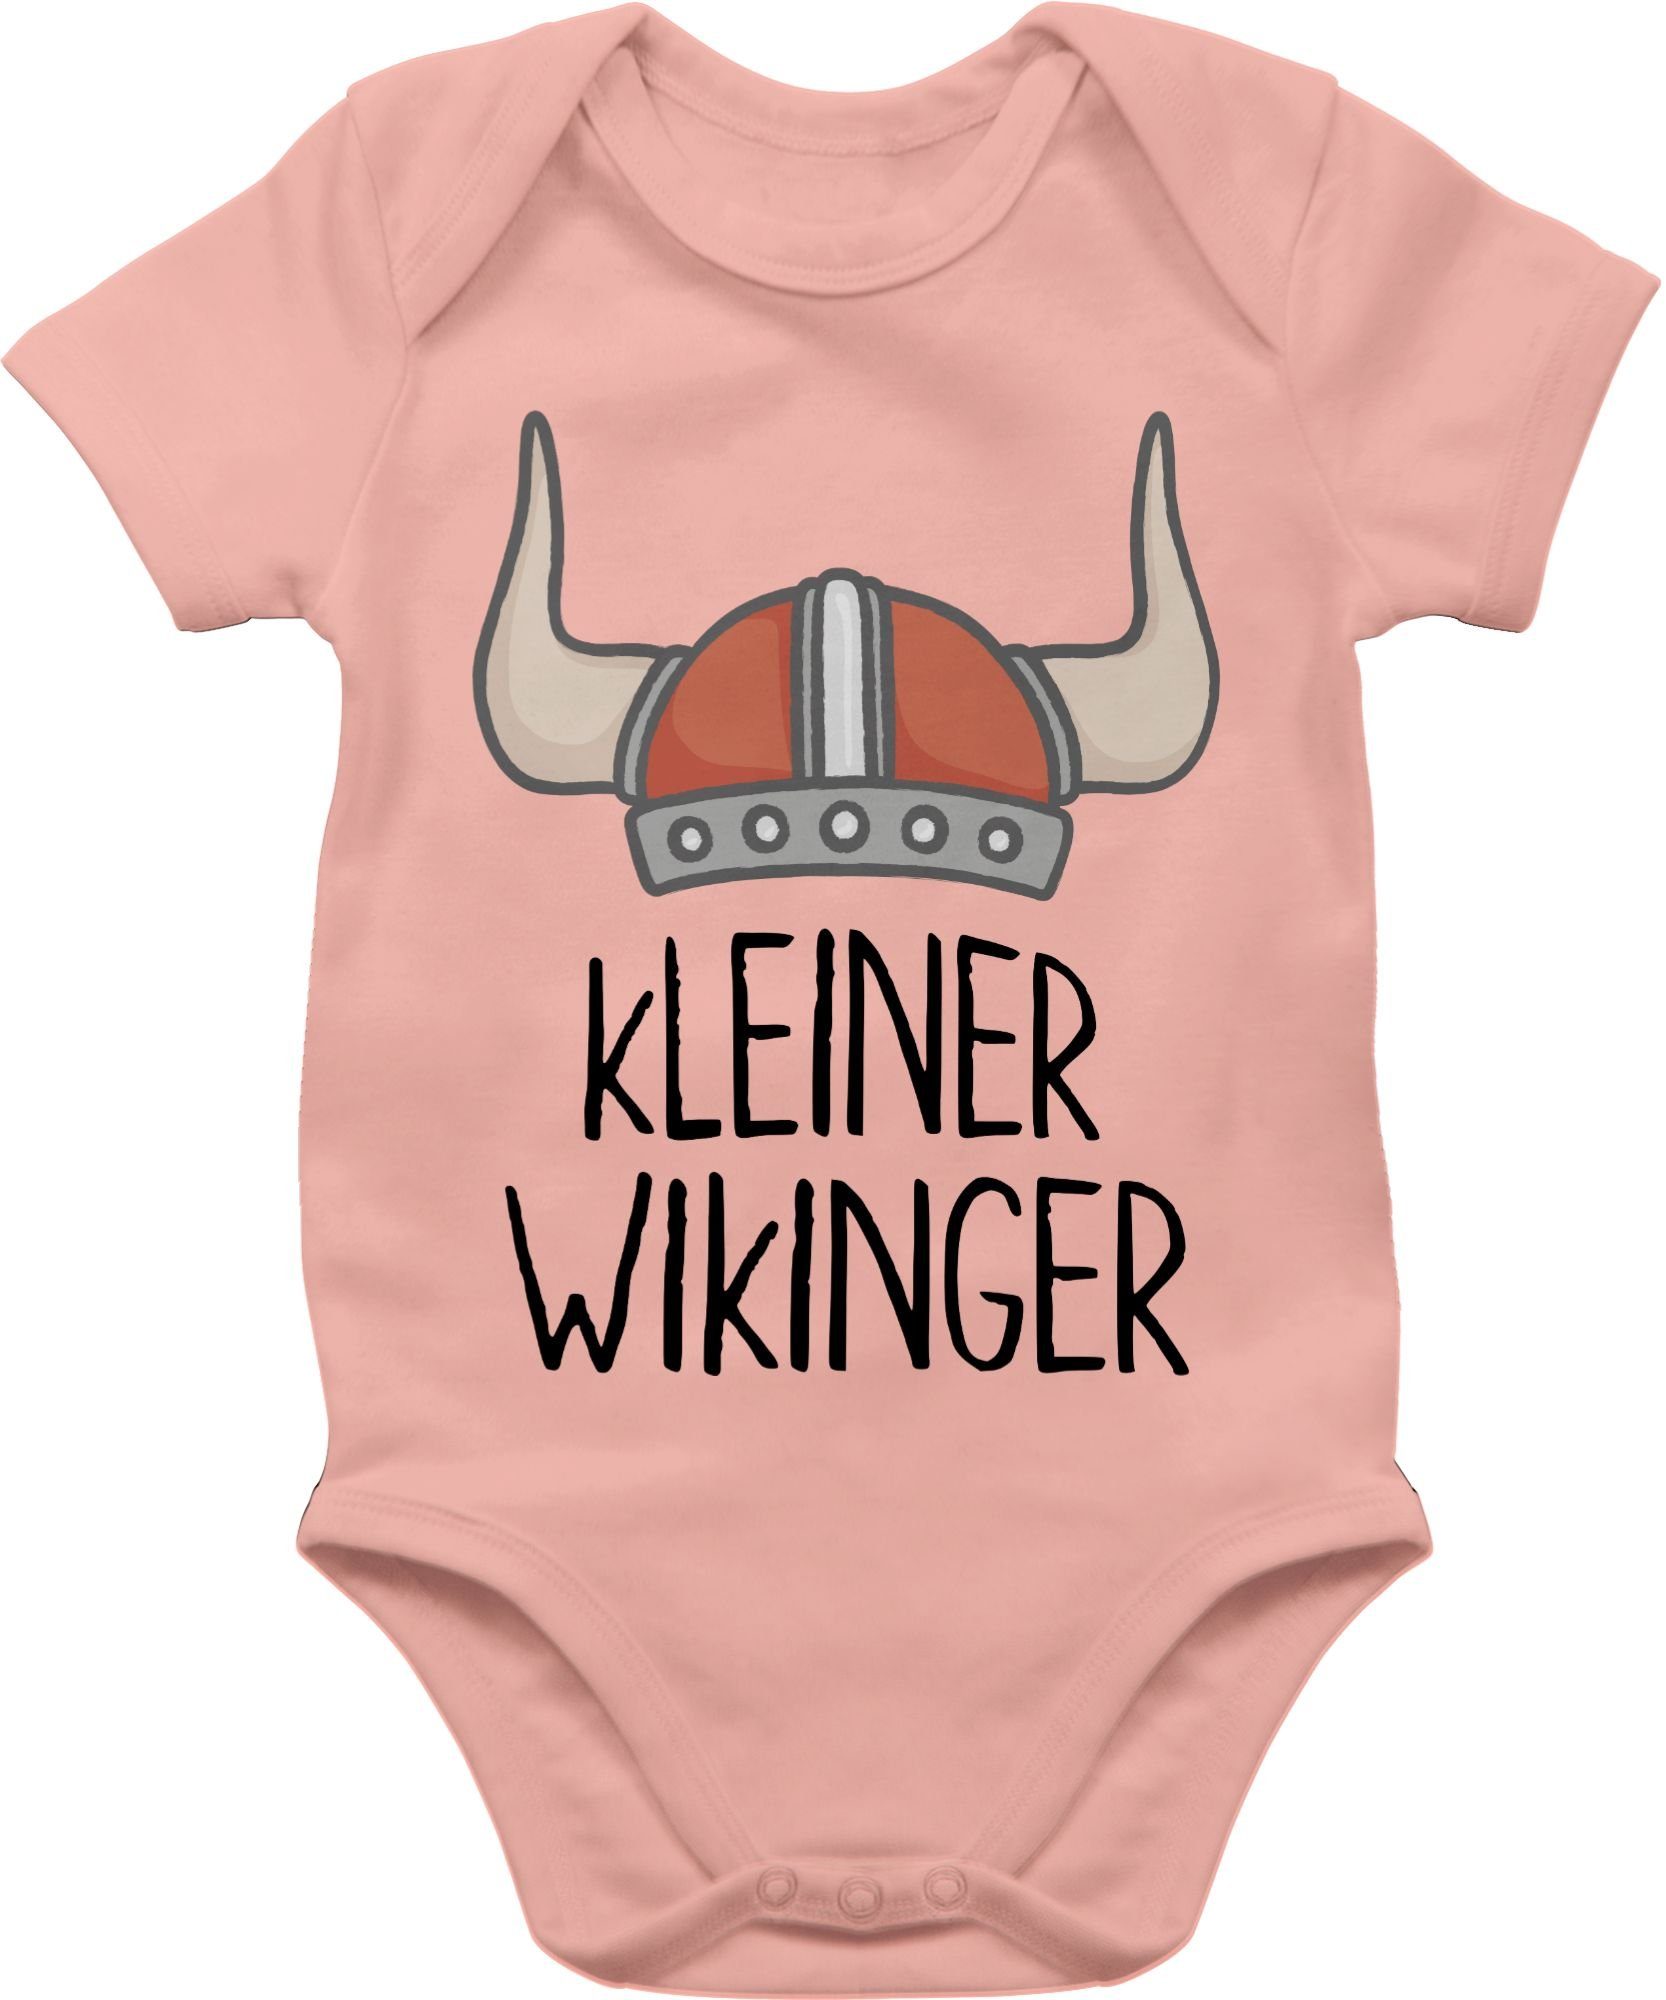 Shirtbody 2 Wikinger & Wikinger Babyrosa kleiner Baby Shirtracer Walhalla